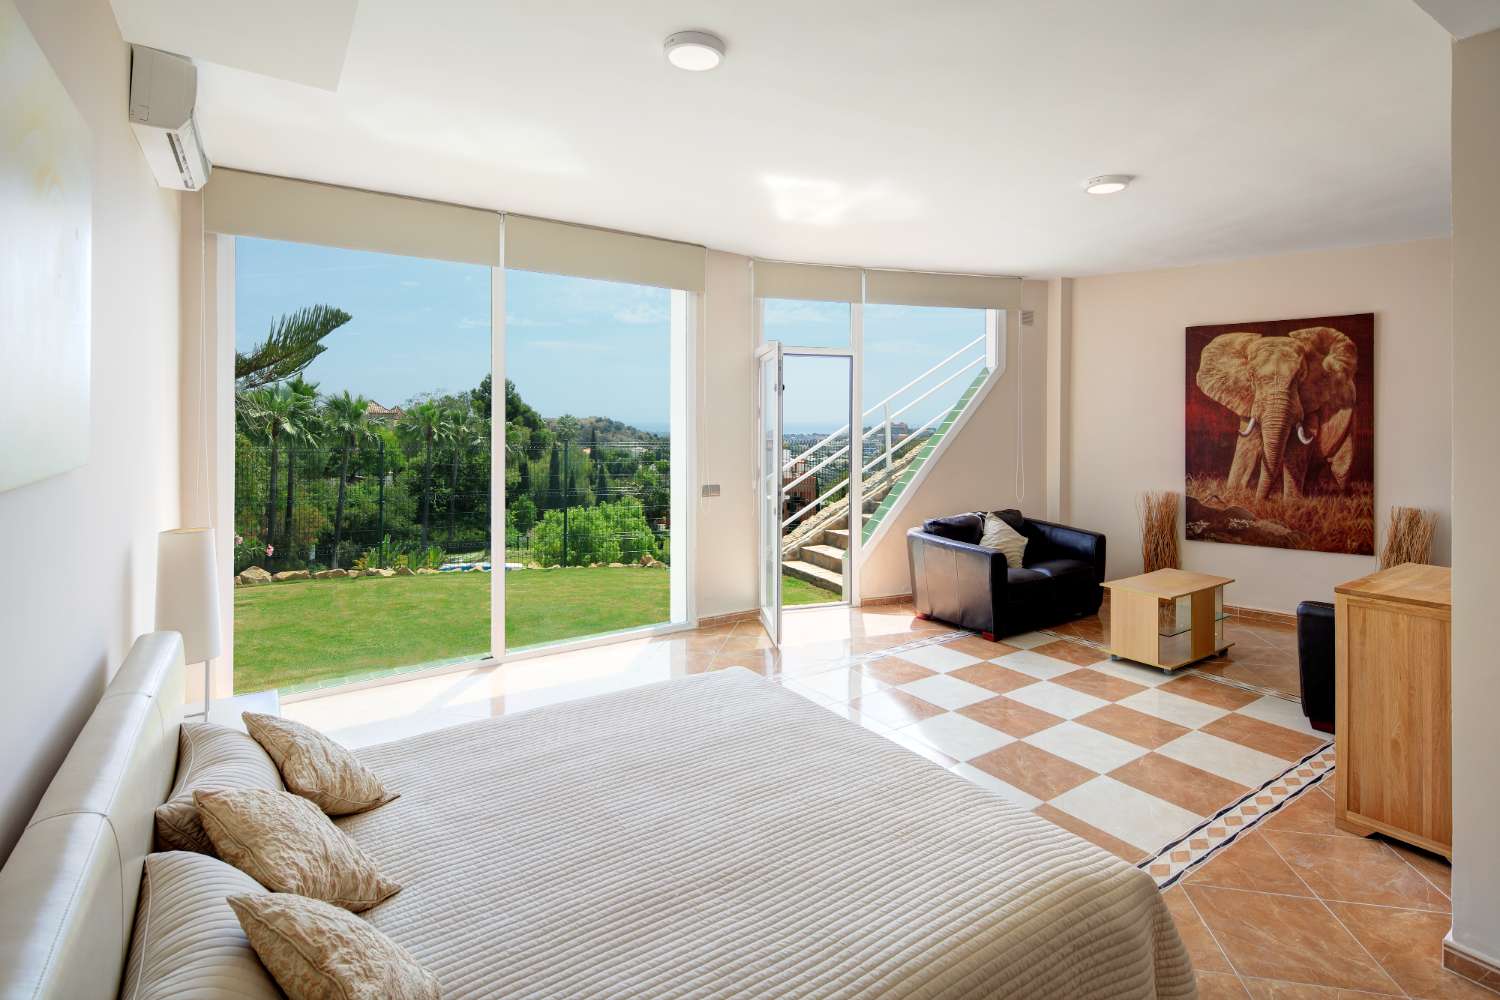 Villa zum Verkauf in La Quinta, Benahavis.  Atemberaubende Aussicht auf La Concha, das Mittelmeer und die afrikanische Küste.